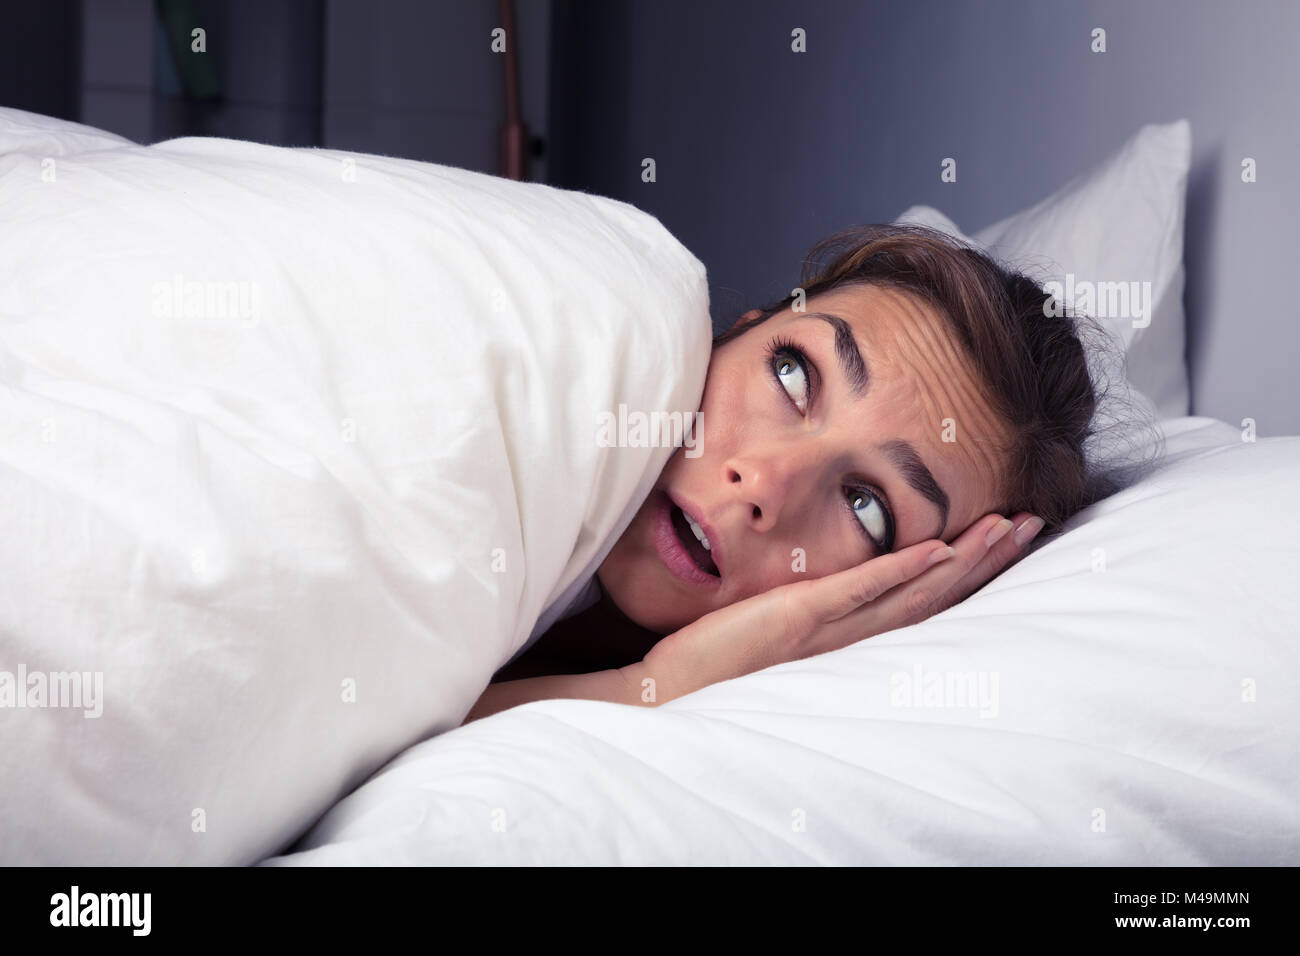 Asustada Mujer tirando de sábana sobre sí mismo en la cama en la noche Foto de stock